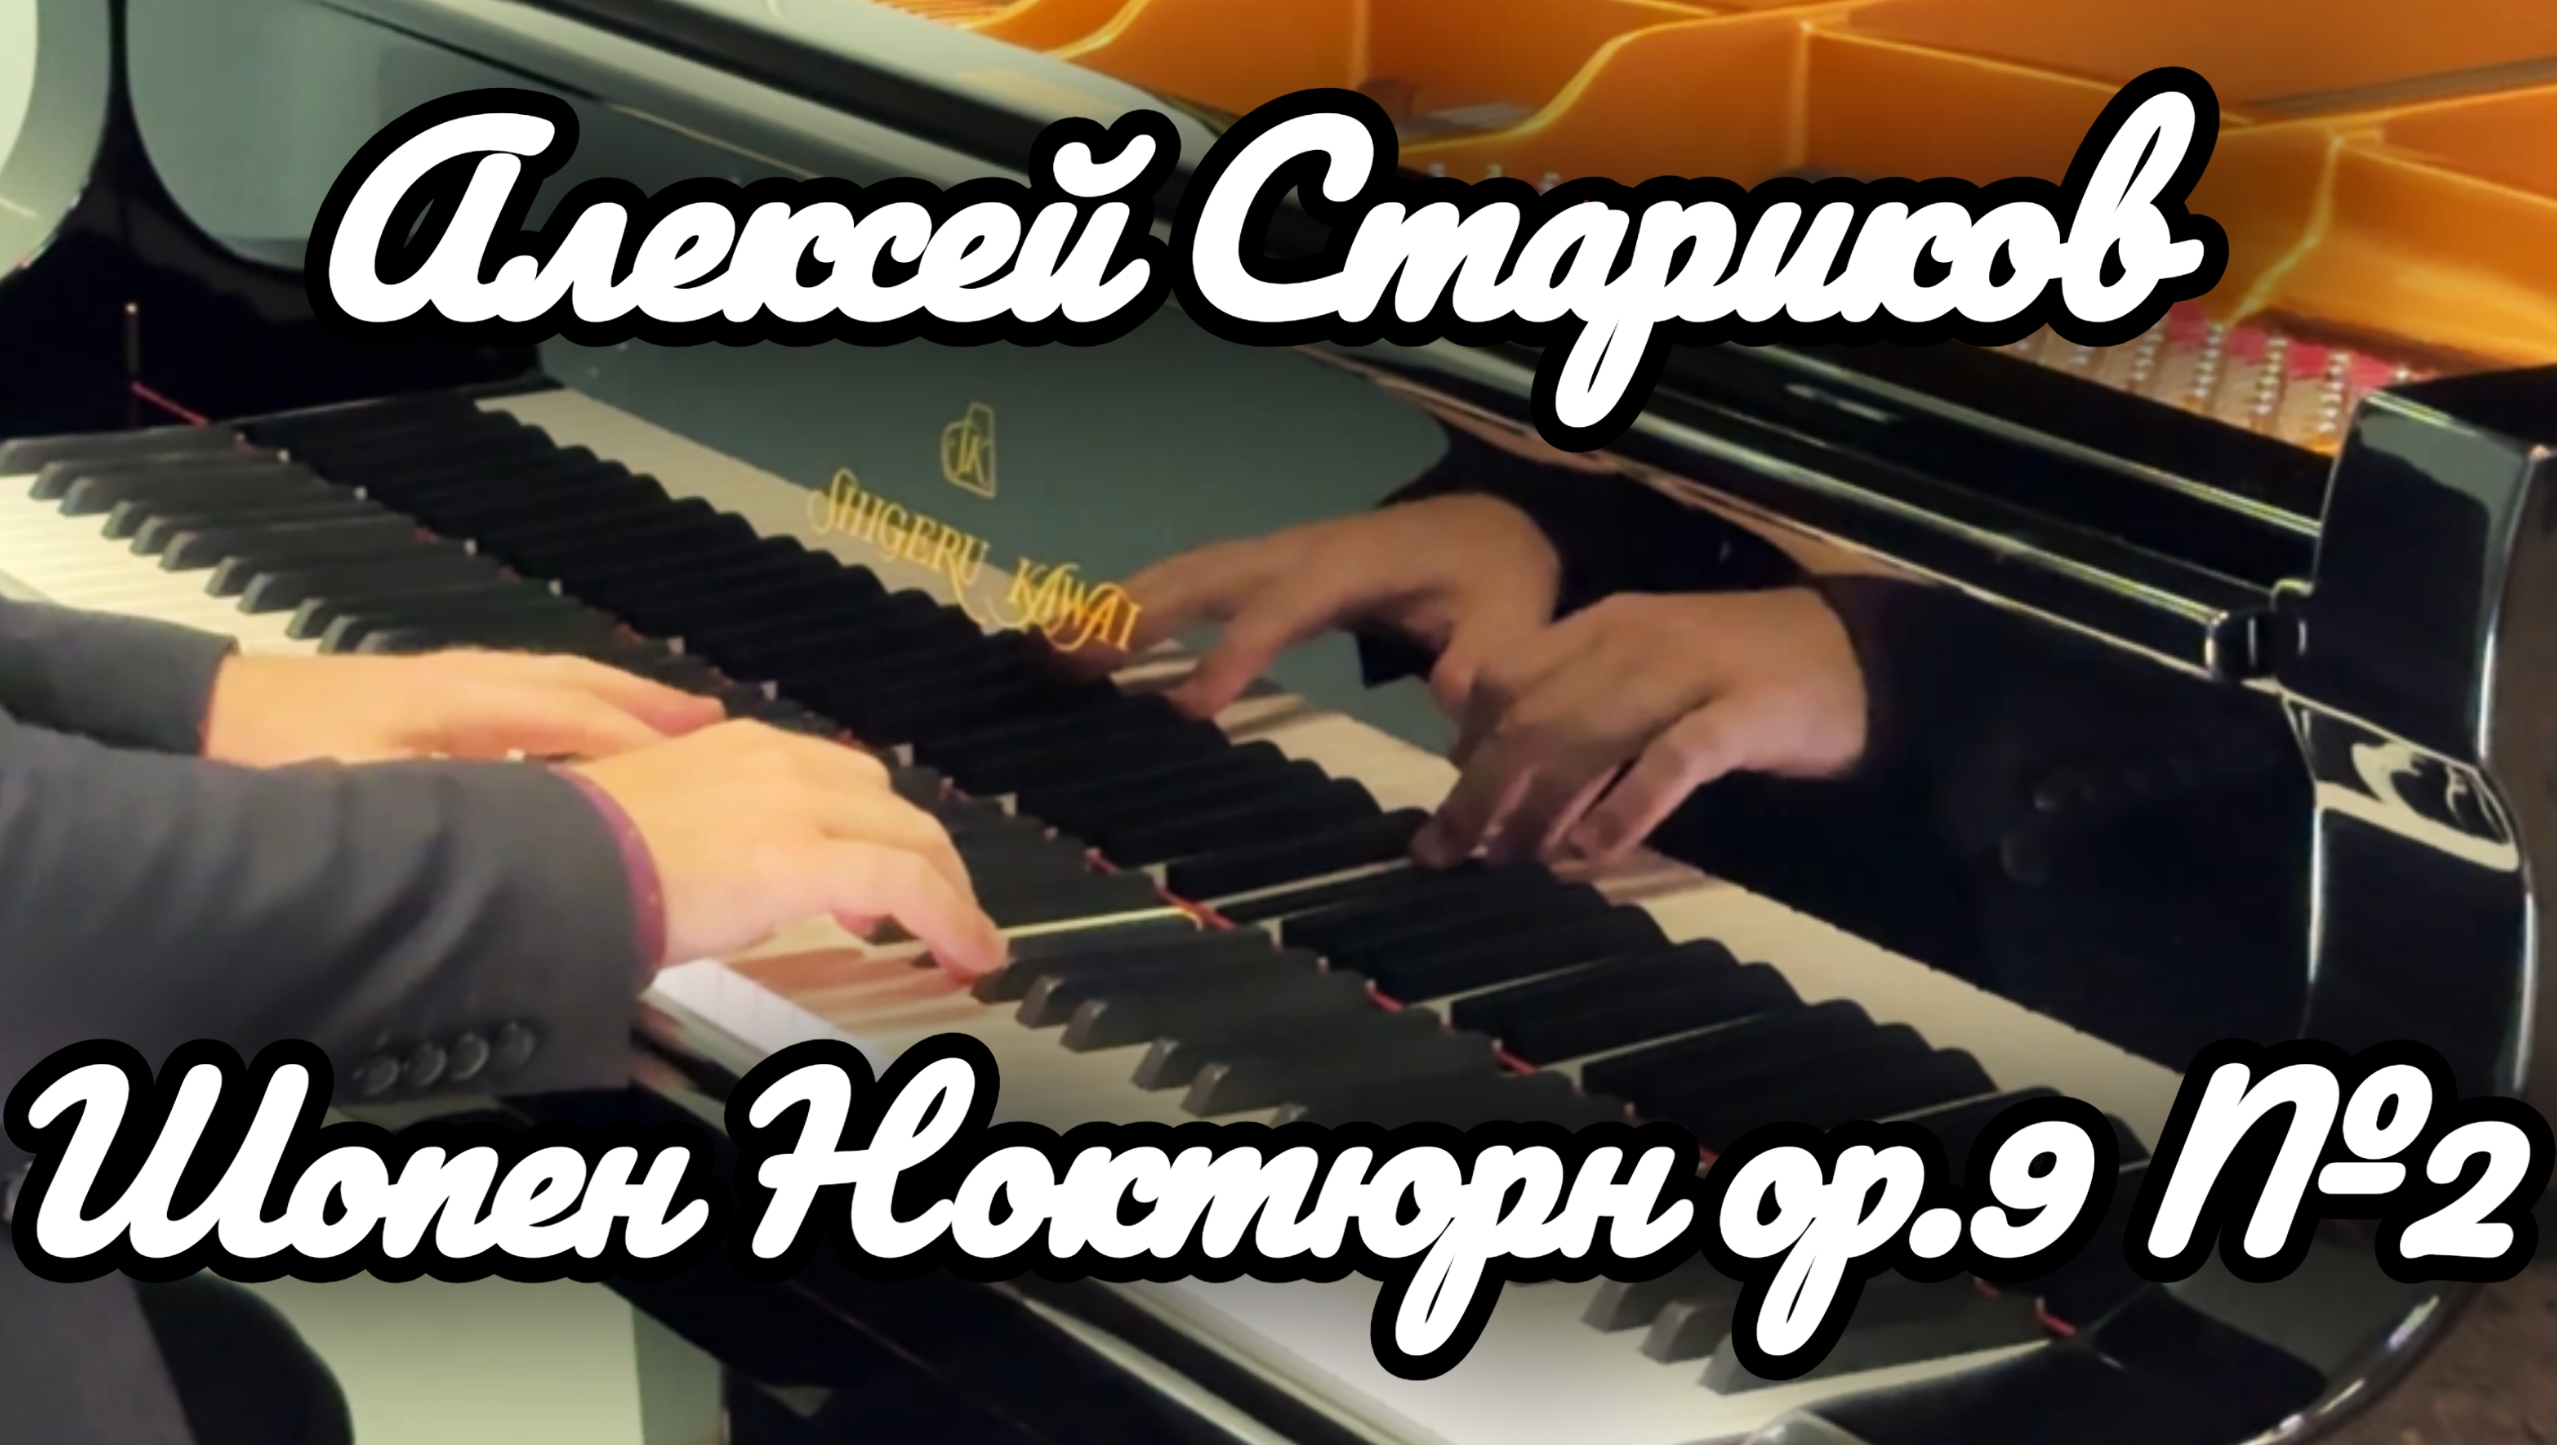 Шопен - Ноктюрн соч.9 №2. Алексей Стариков / Chopin - Nocturne op.9 №2. Alexey Starikov